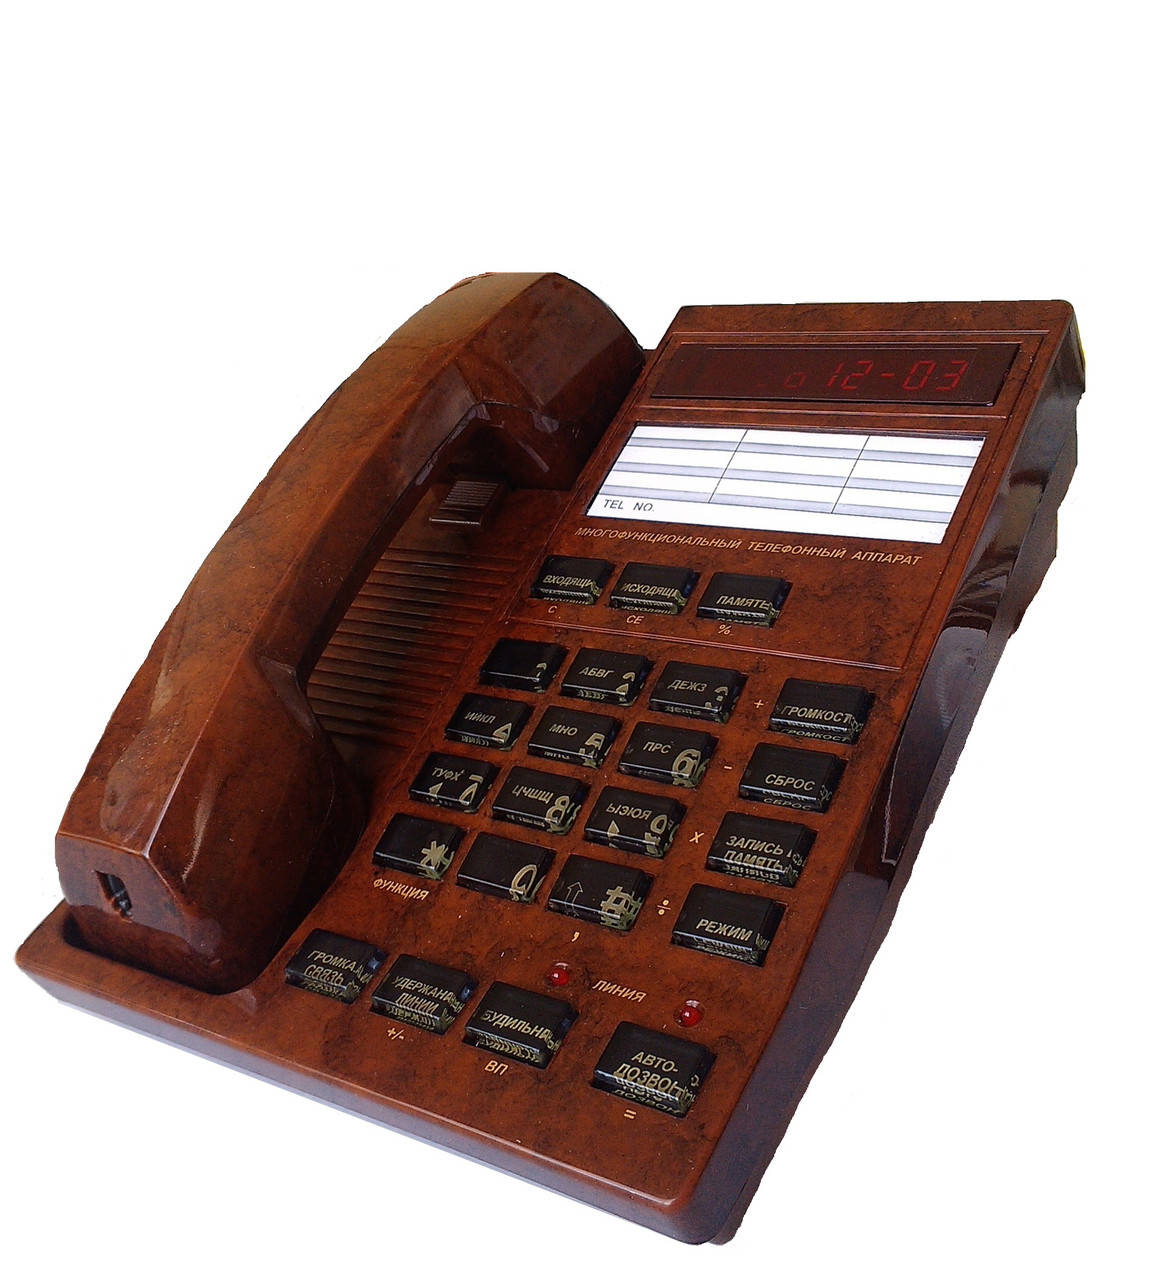 

Многофункциональный телефон с АОН Русь-26cPro